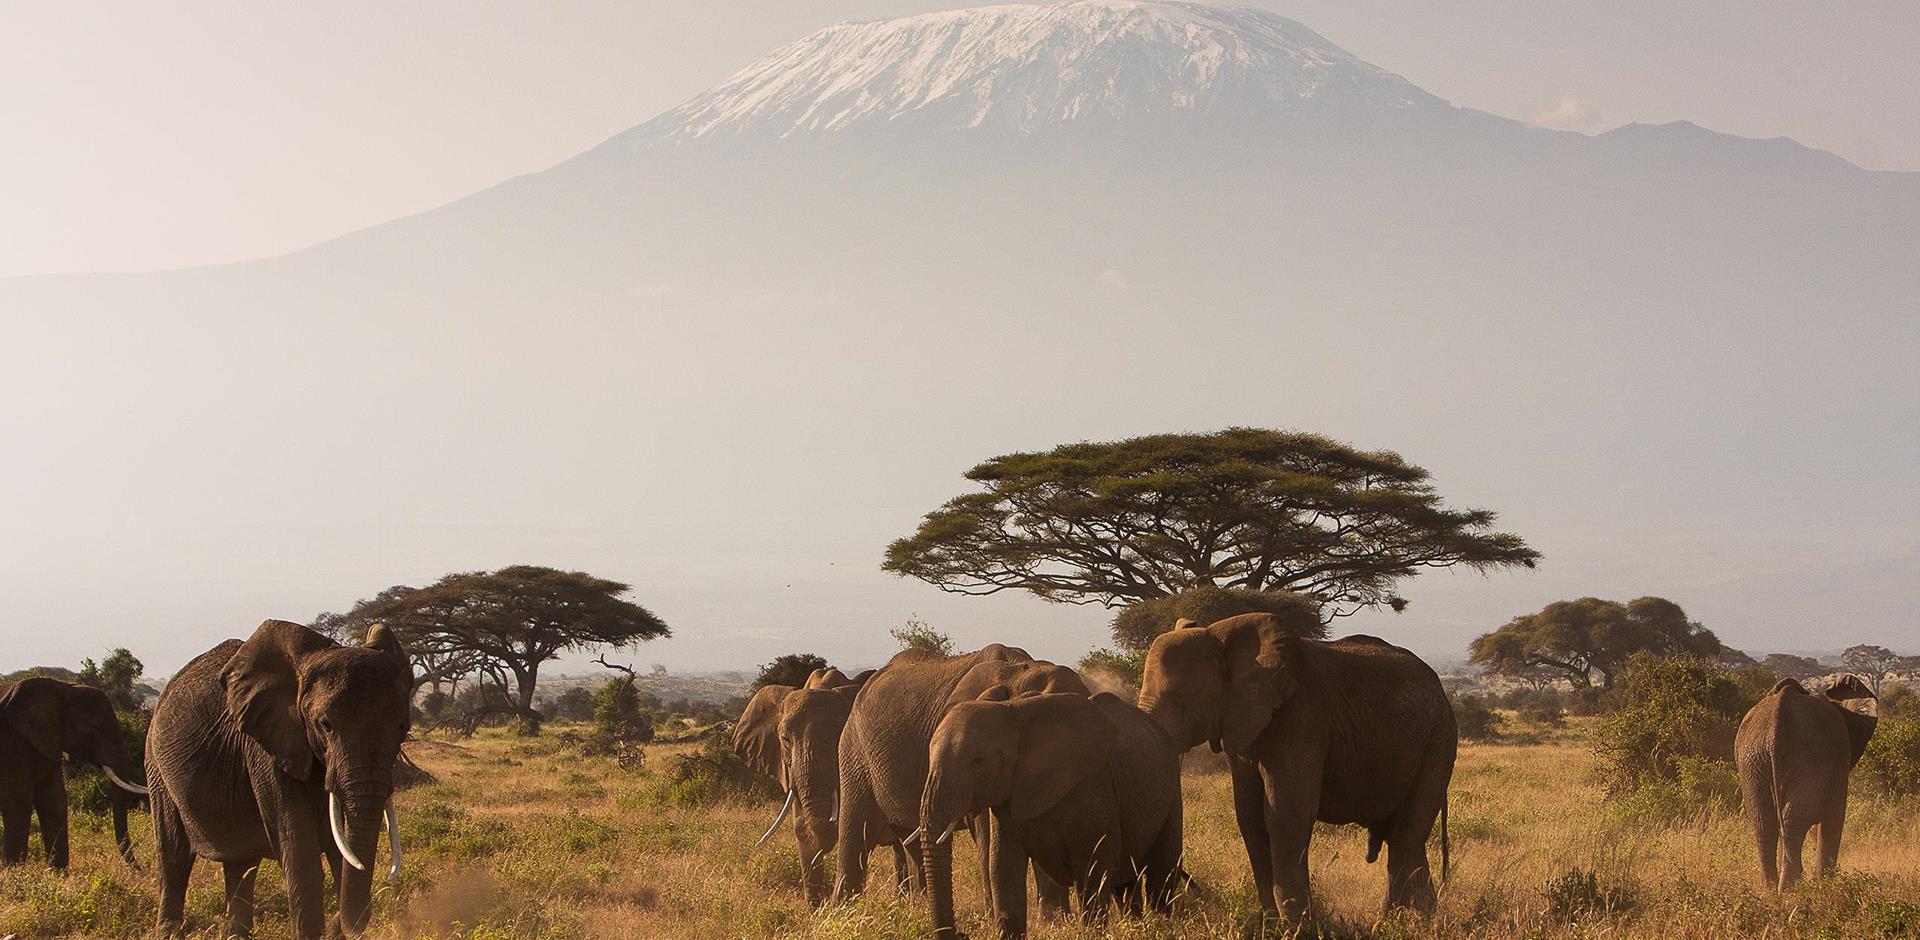 Elephants, Mount Kilimanjaro, Africa